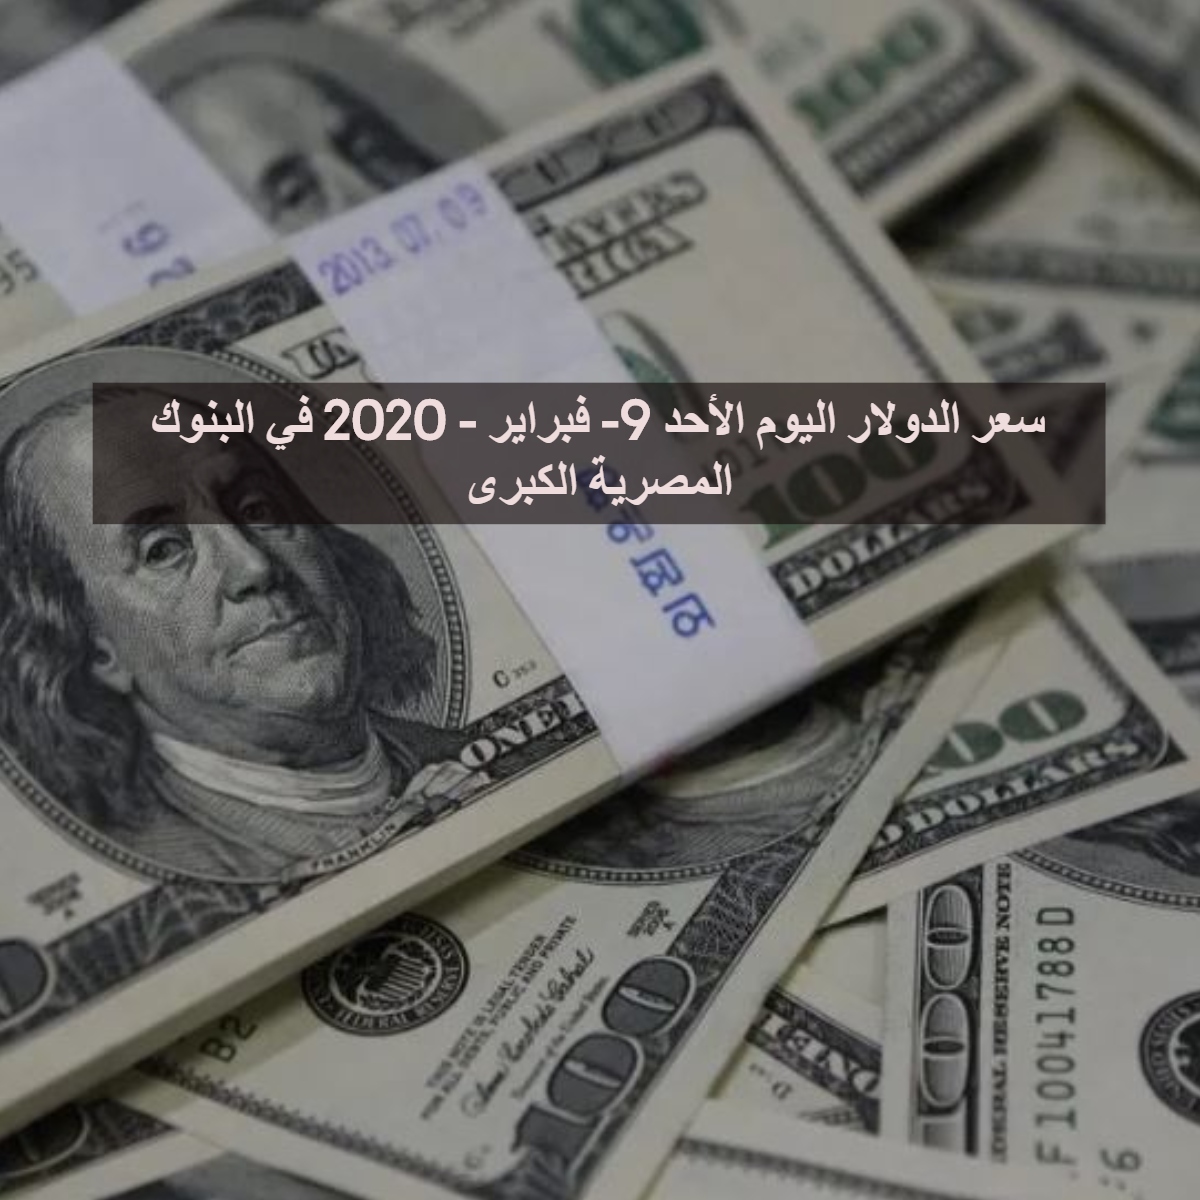 سعر الدولار اليوم الأحد 9- فبراير - 2020 في البنوك المصرية الكبرى